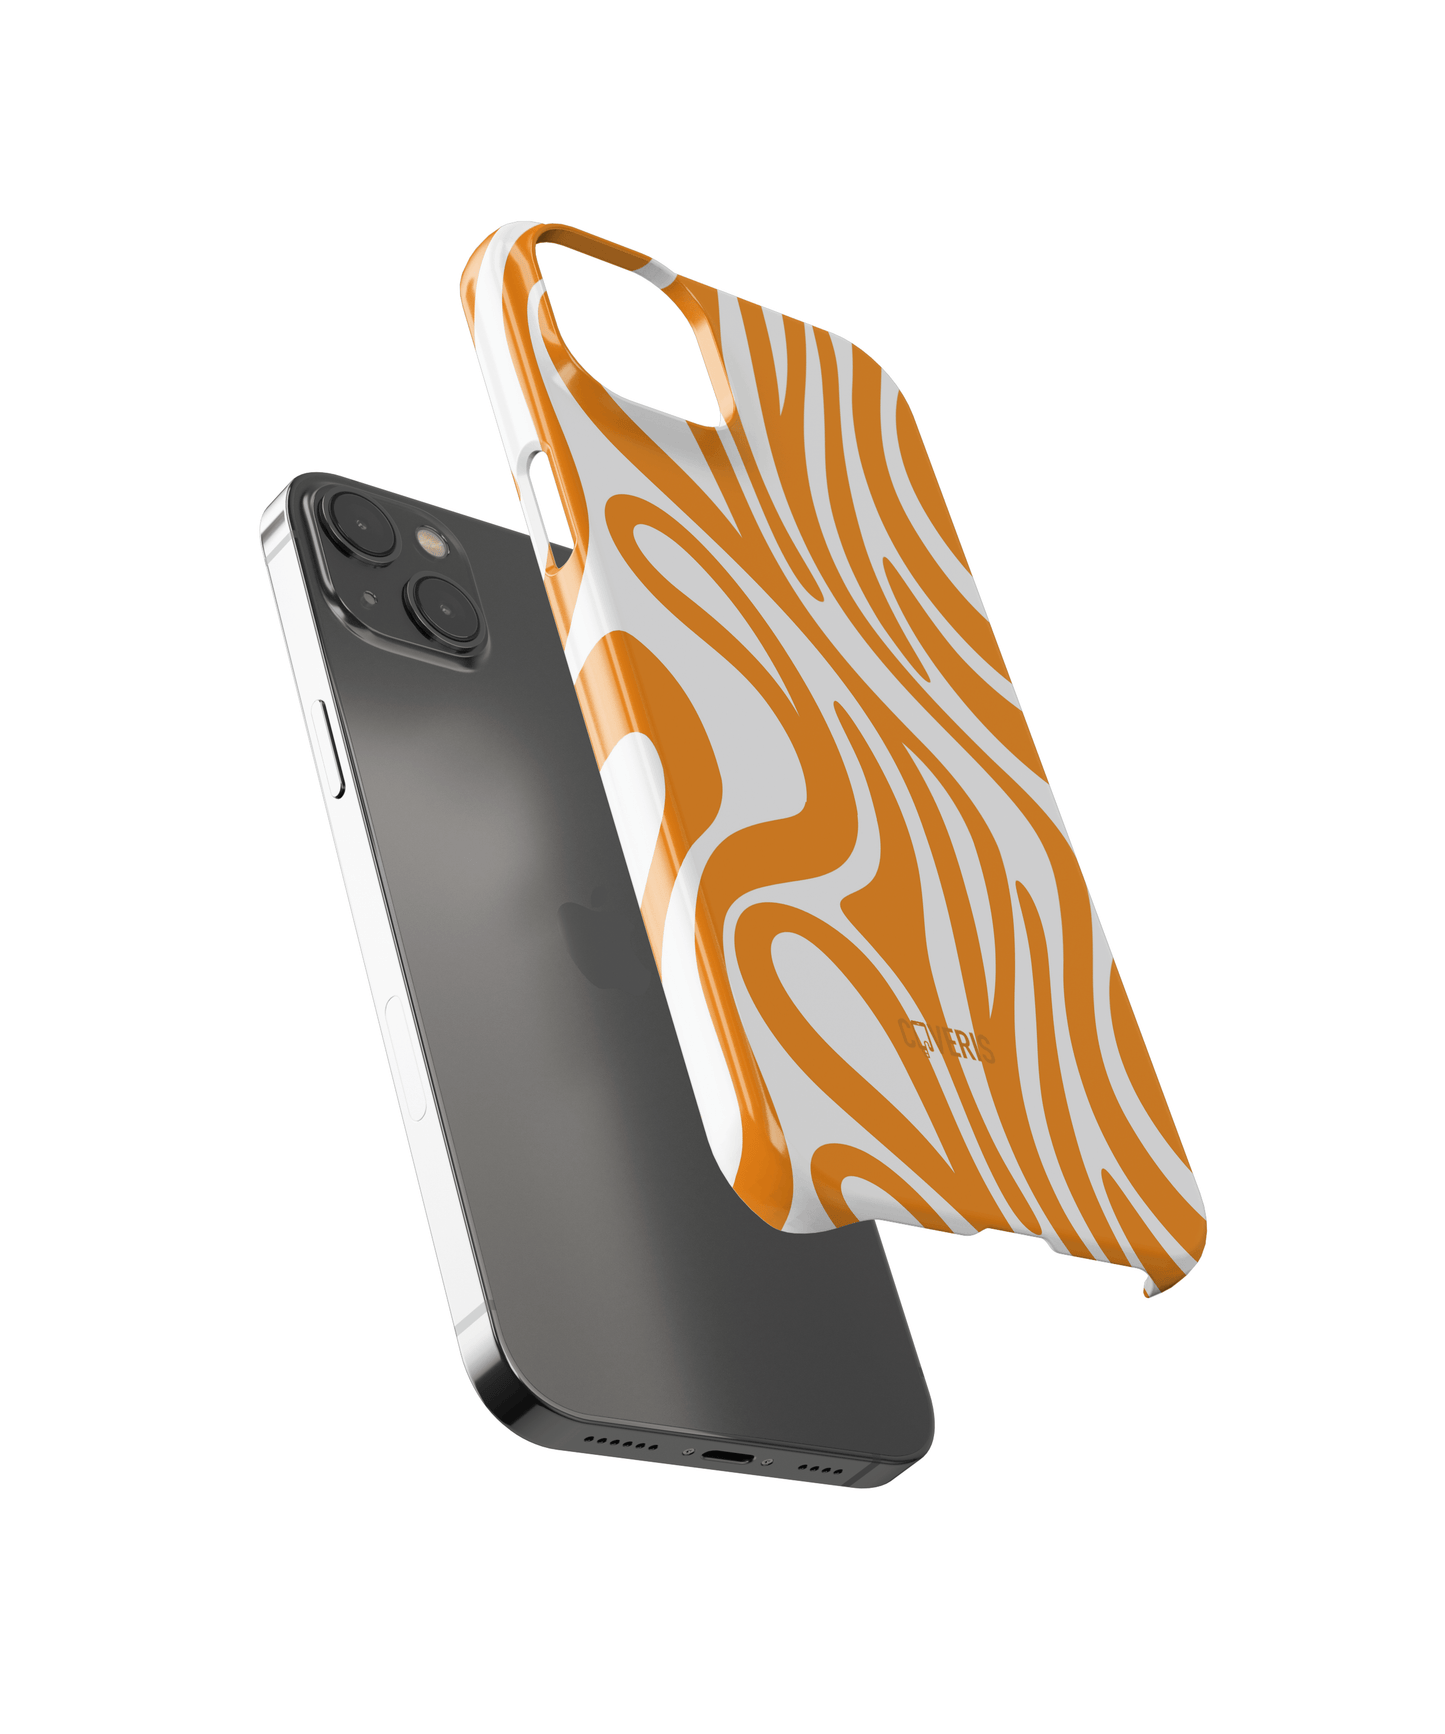 Orangewaves - Samsung Galaxy Note 9 phone case